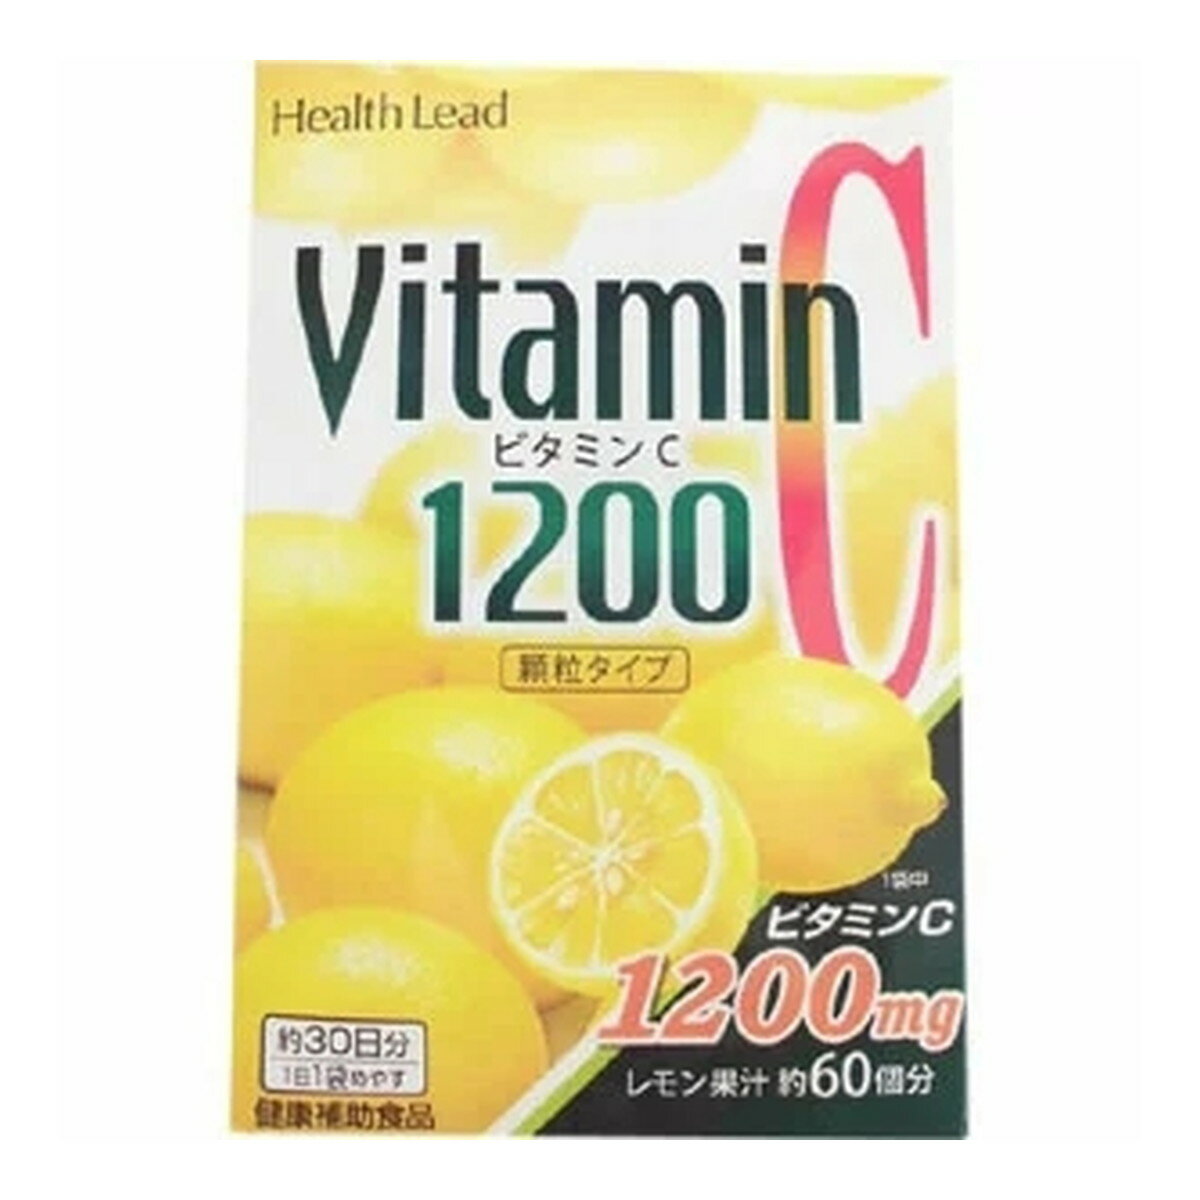 商品名：新日本漢方 ビタミンC 1200 顆粒タイプ 2g×30スティック内容量：2g×30スティックJANコード：4996344301568発売元、製造元、輸入元又は販売元：新日本漢方原産国：日本区分：その他健康食品商品番号：103-4996344301568商品説明1スティック中にレモン果汁約60個分のビタミンC（1200mg）が含まれています。そのままお召し上がりいただけるレモン味ですので、毎日の健康や美容にご利用ください広告文責：アットライフ株式会社TEL 050-3196-1510 ※商品パッケージは変更の場合あり。メーカー欠品または完売の際、キャンセルをお願いすることがあります。ご了承ください。